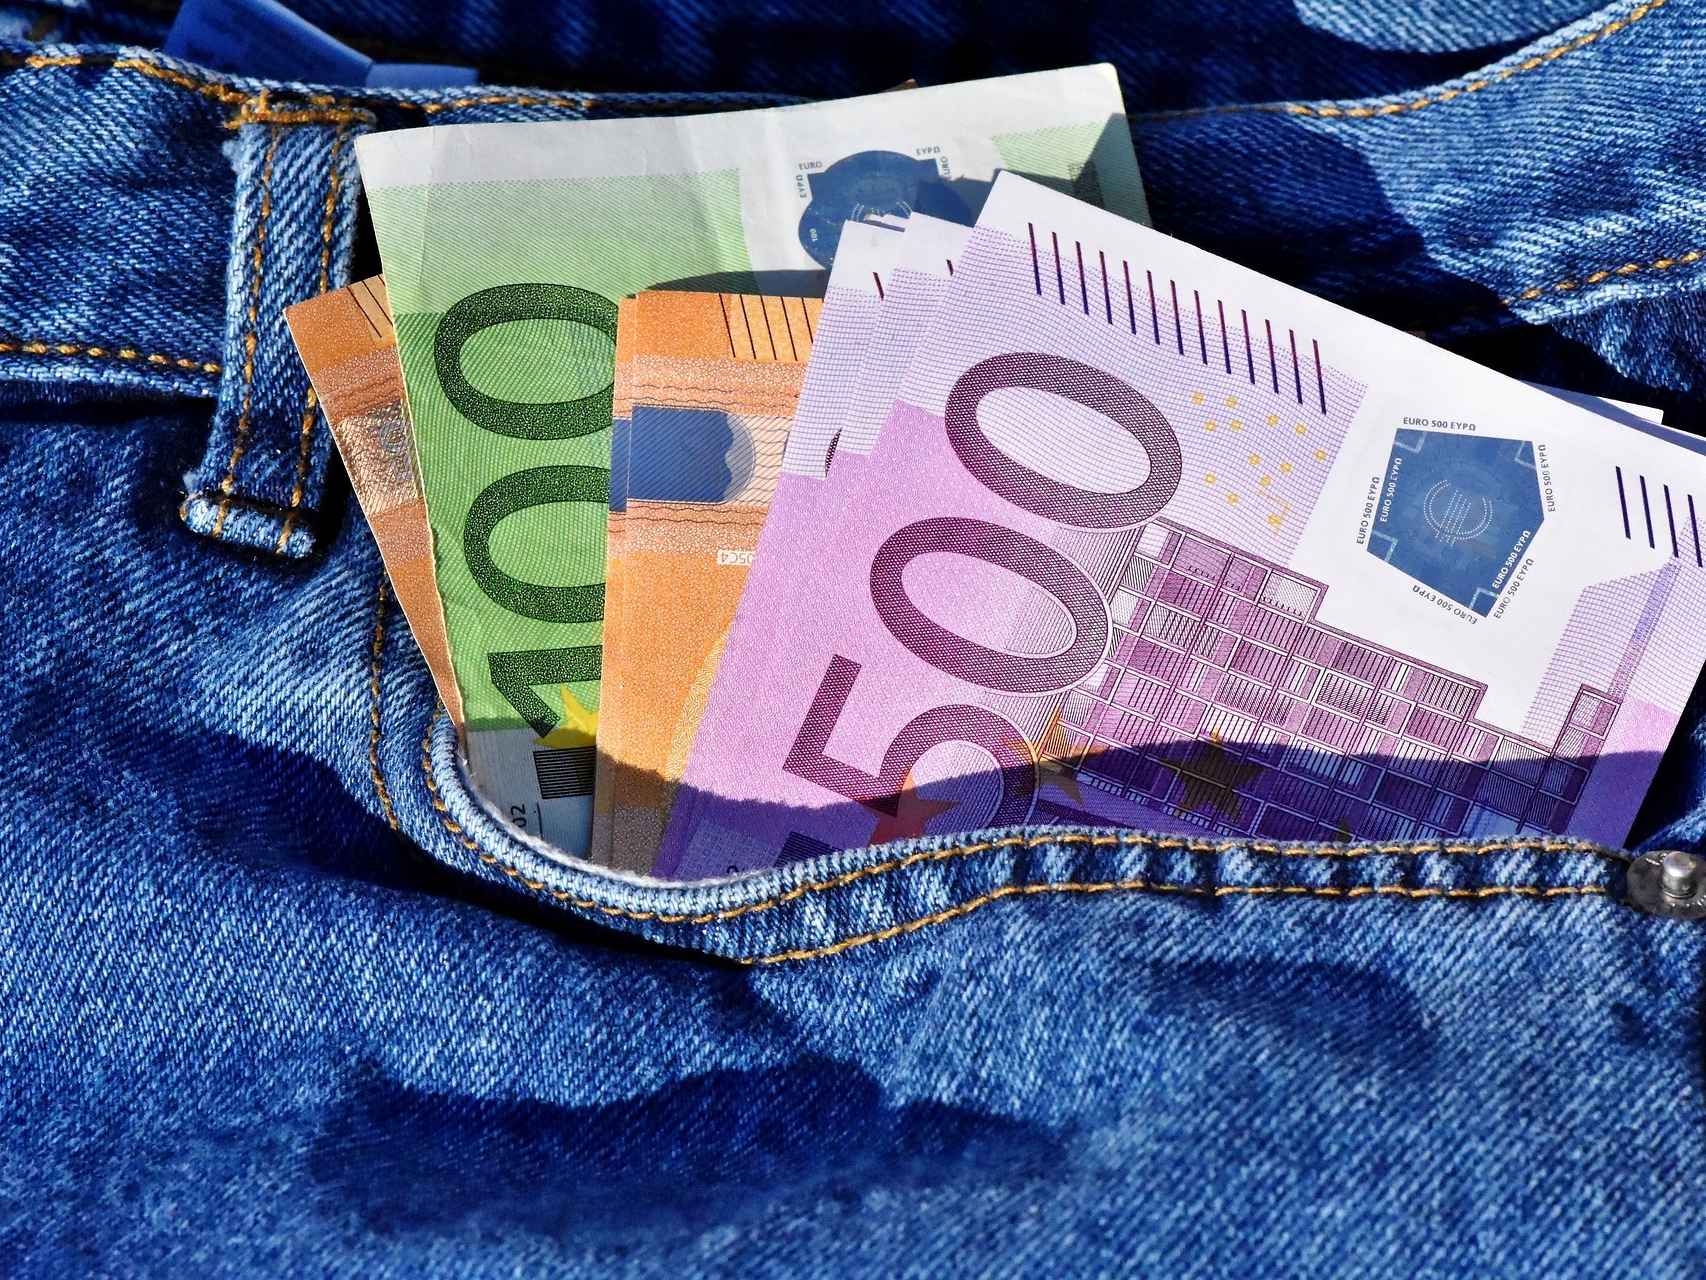 Billetes de euro de alta denominación en un bolsillo.